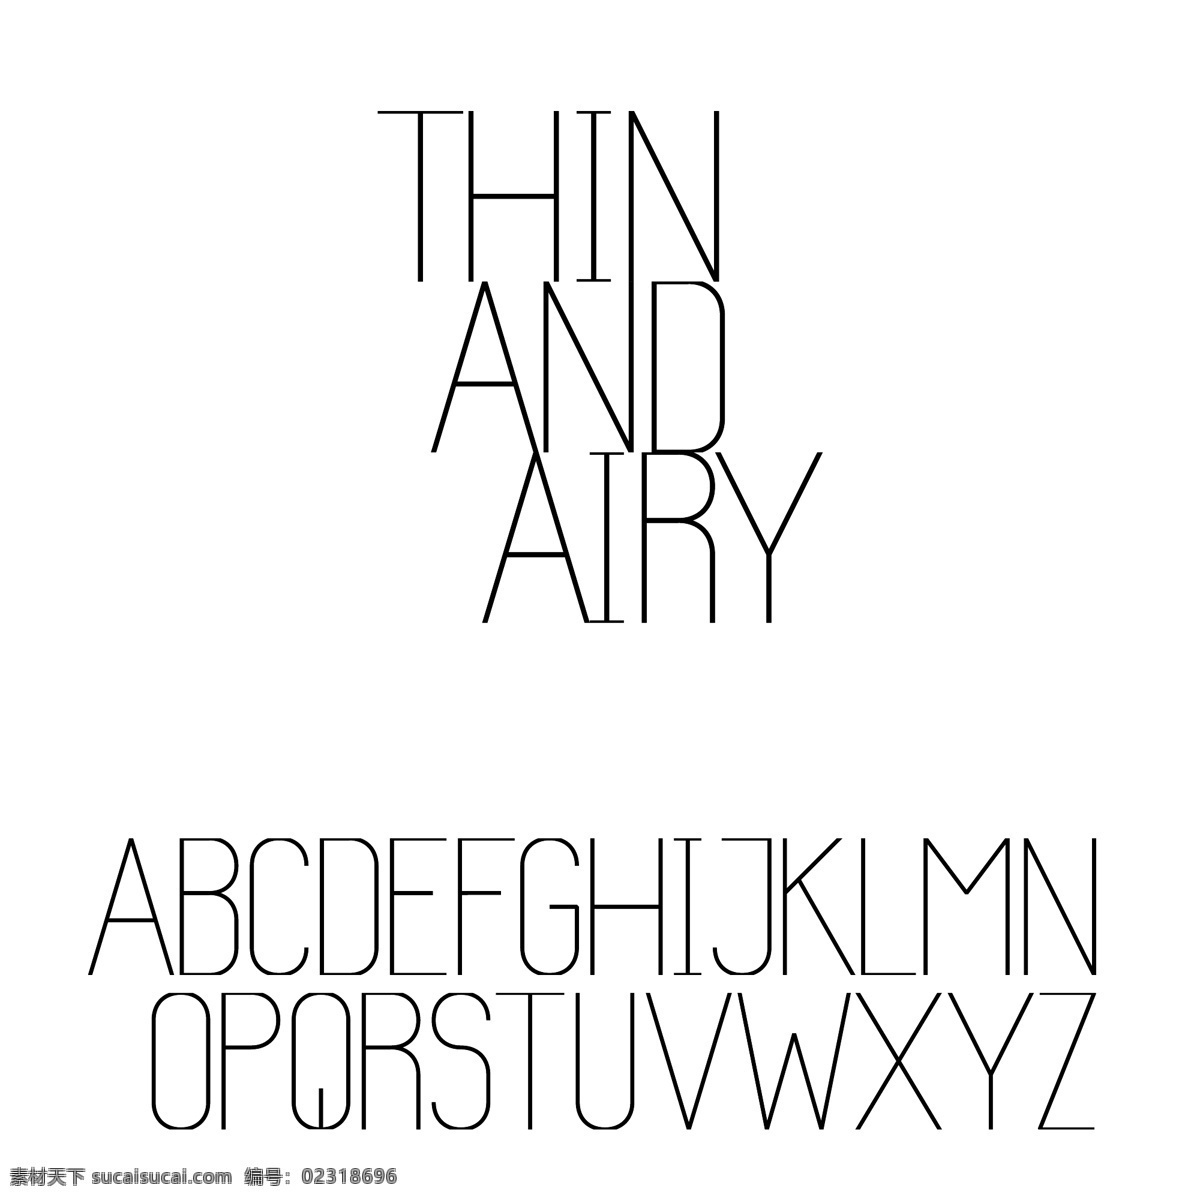 英文字母 字体设计 英文 数字字体 abcd 字母 英文字体 字体 矢量图片 矢量素材